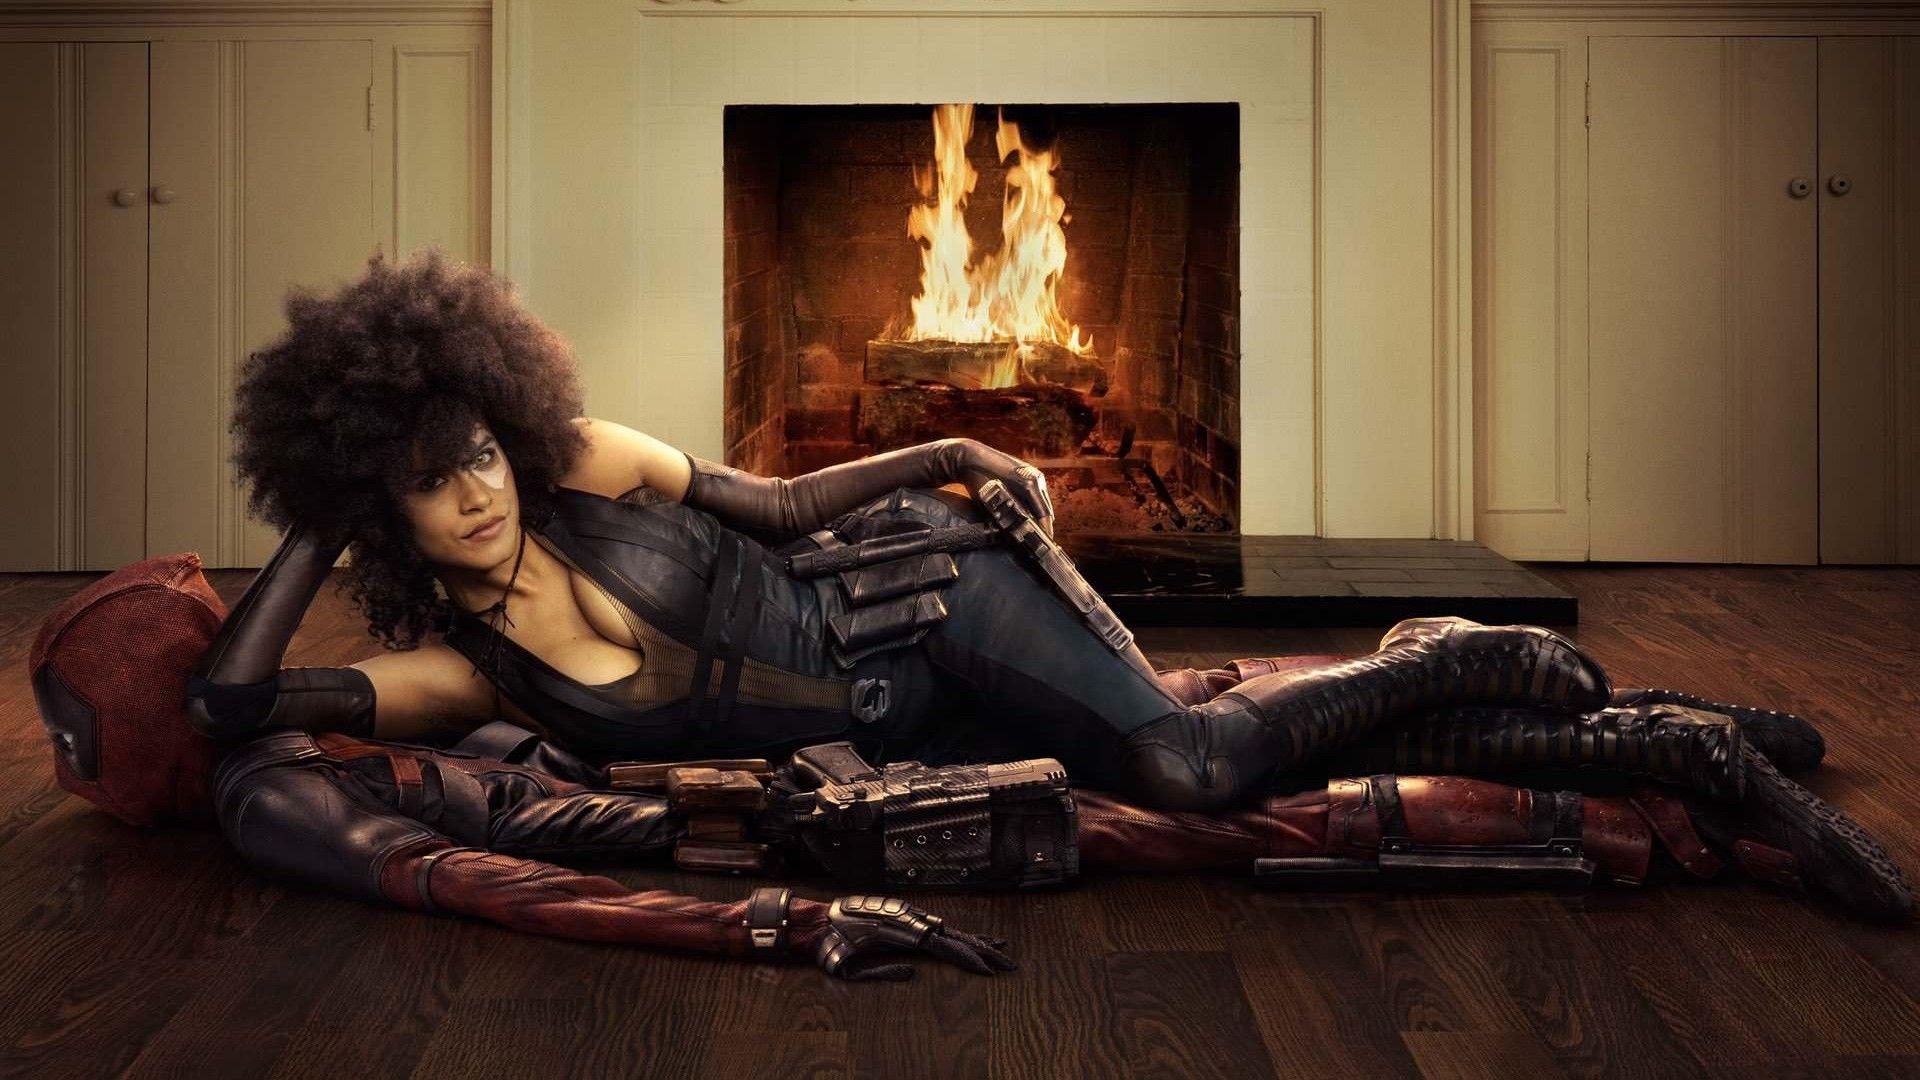 Zazie Beetz as Domino in Deadpool 2 Wallpaper